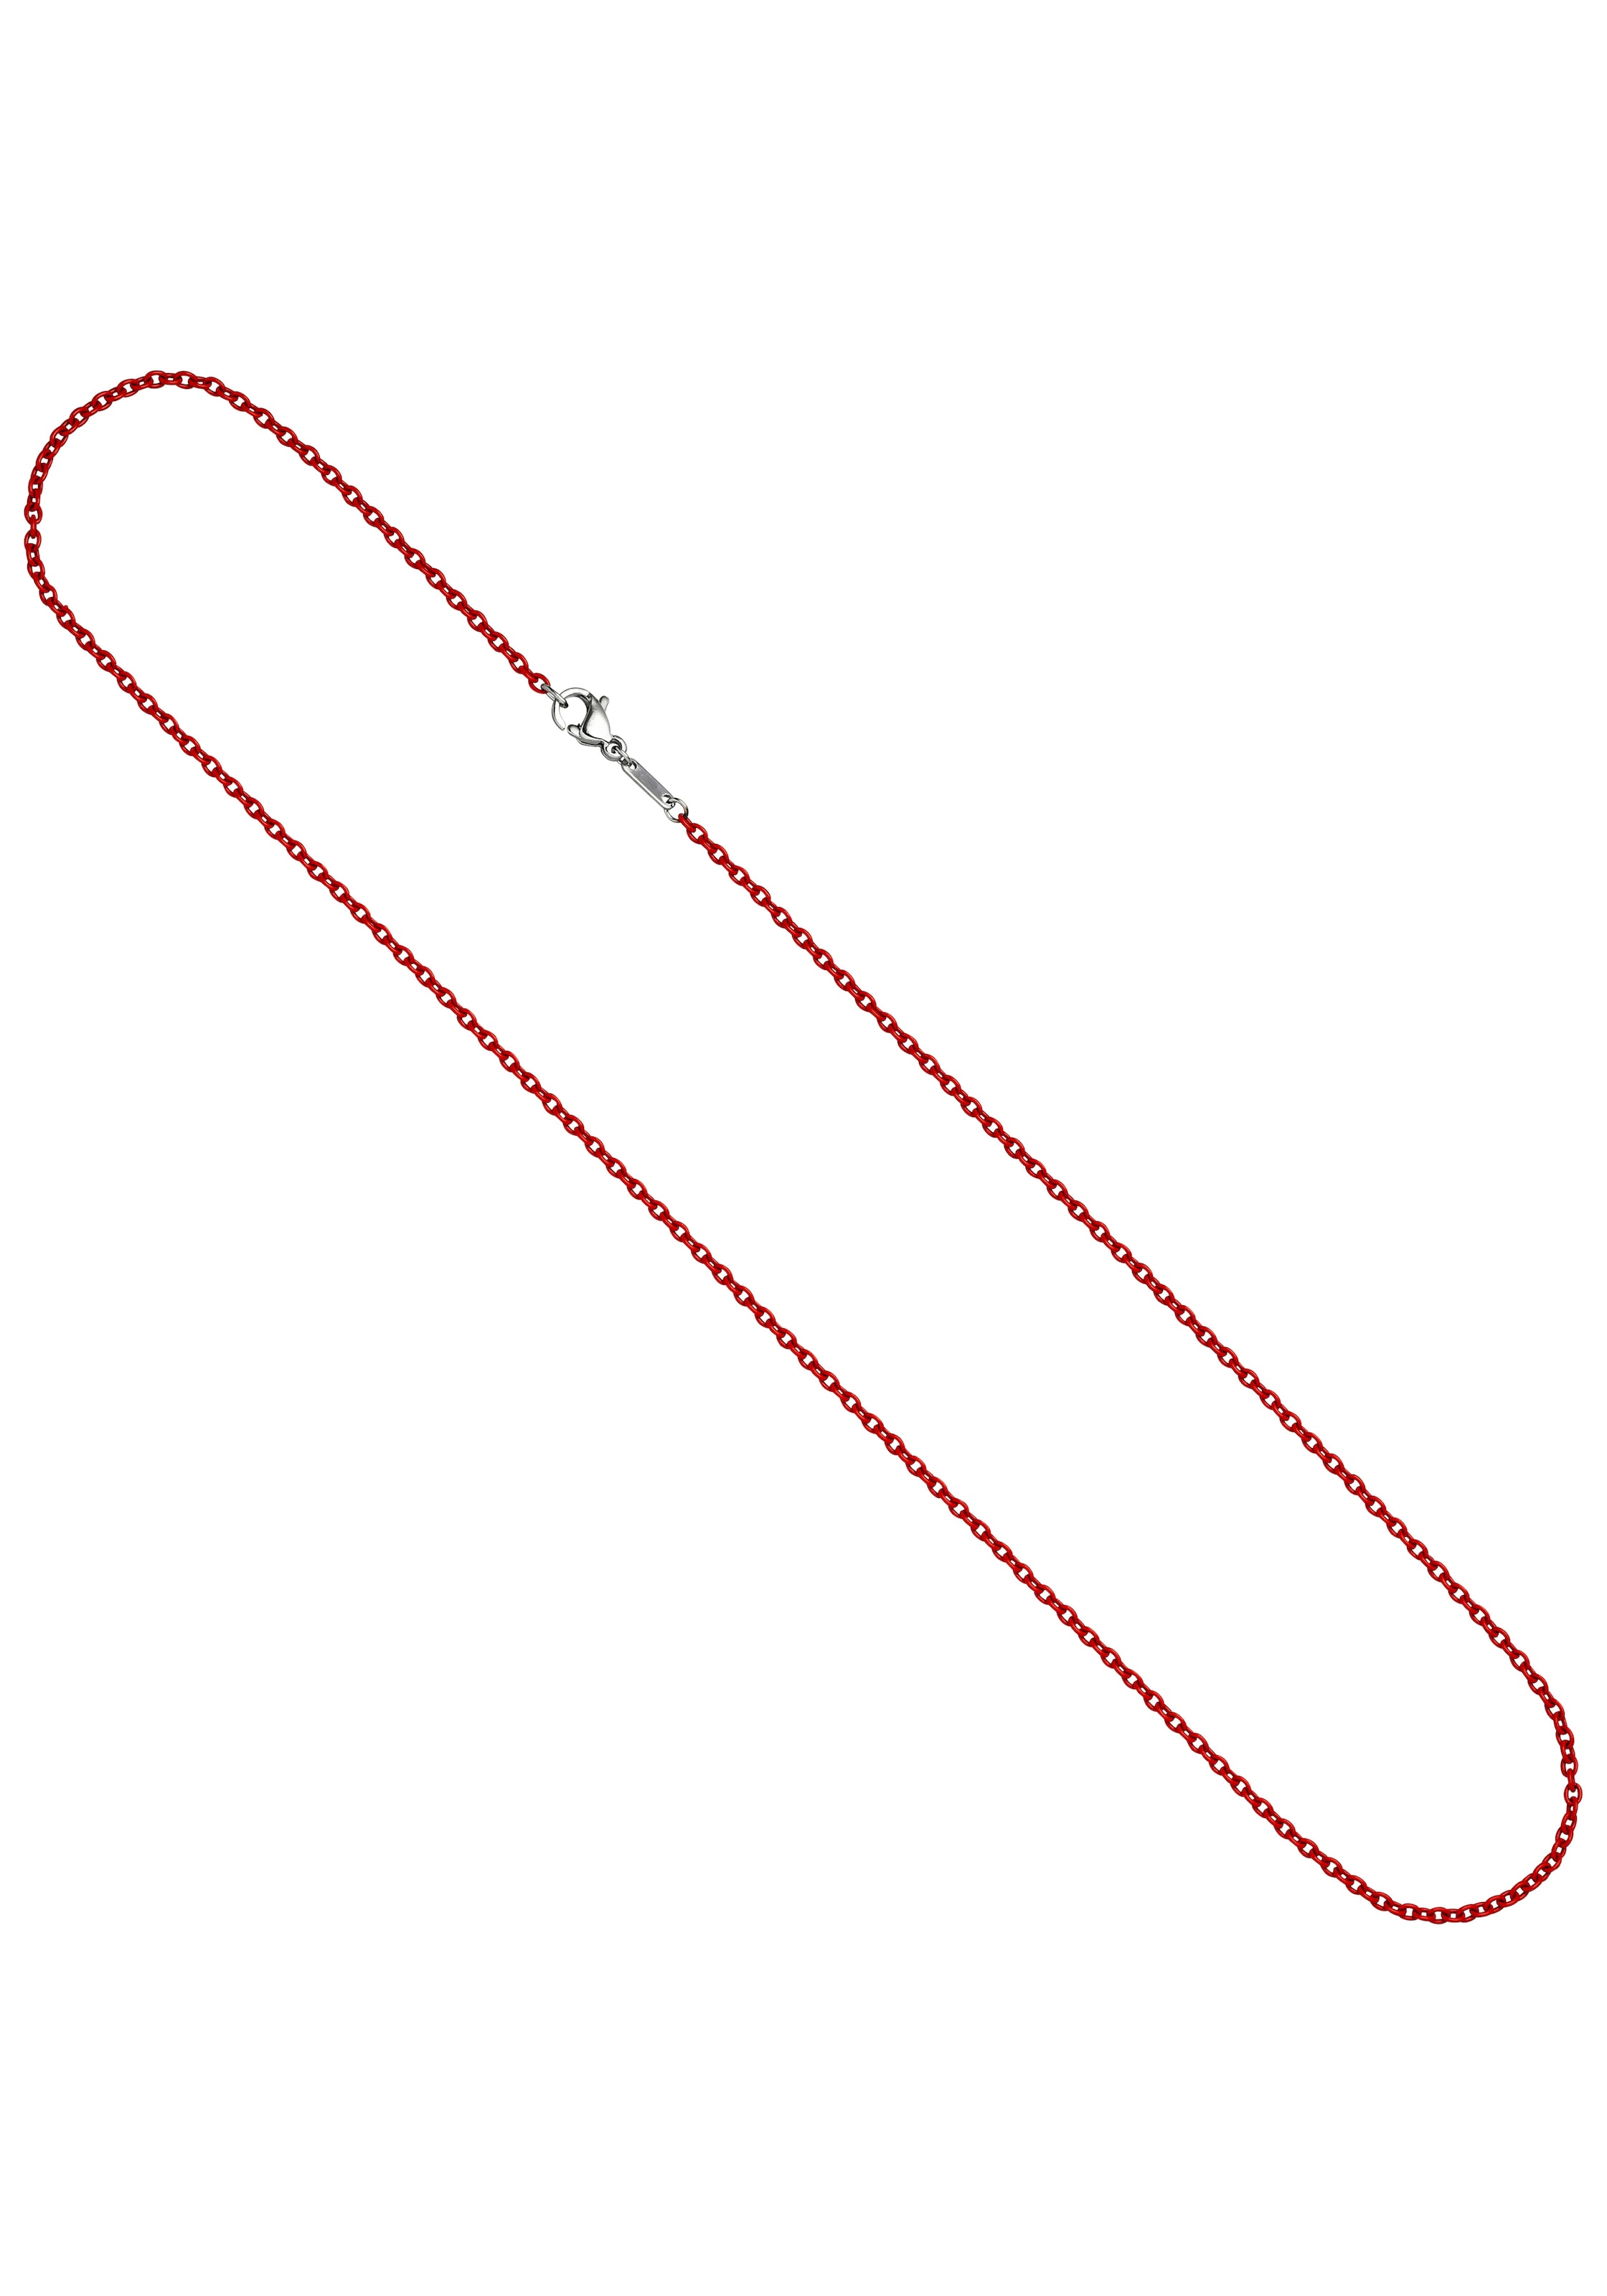 JOBO Edelstahlkette, Rundankerkette Edelstahl rot lackiert 45 cm